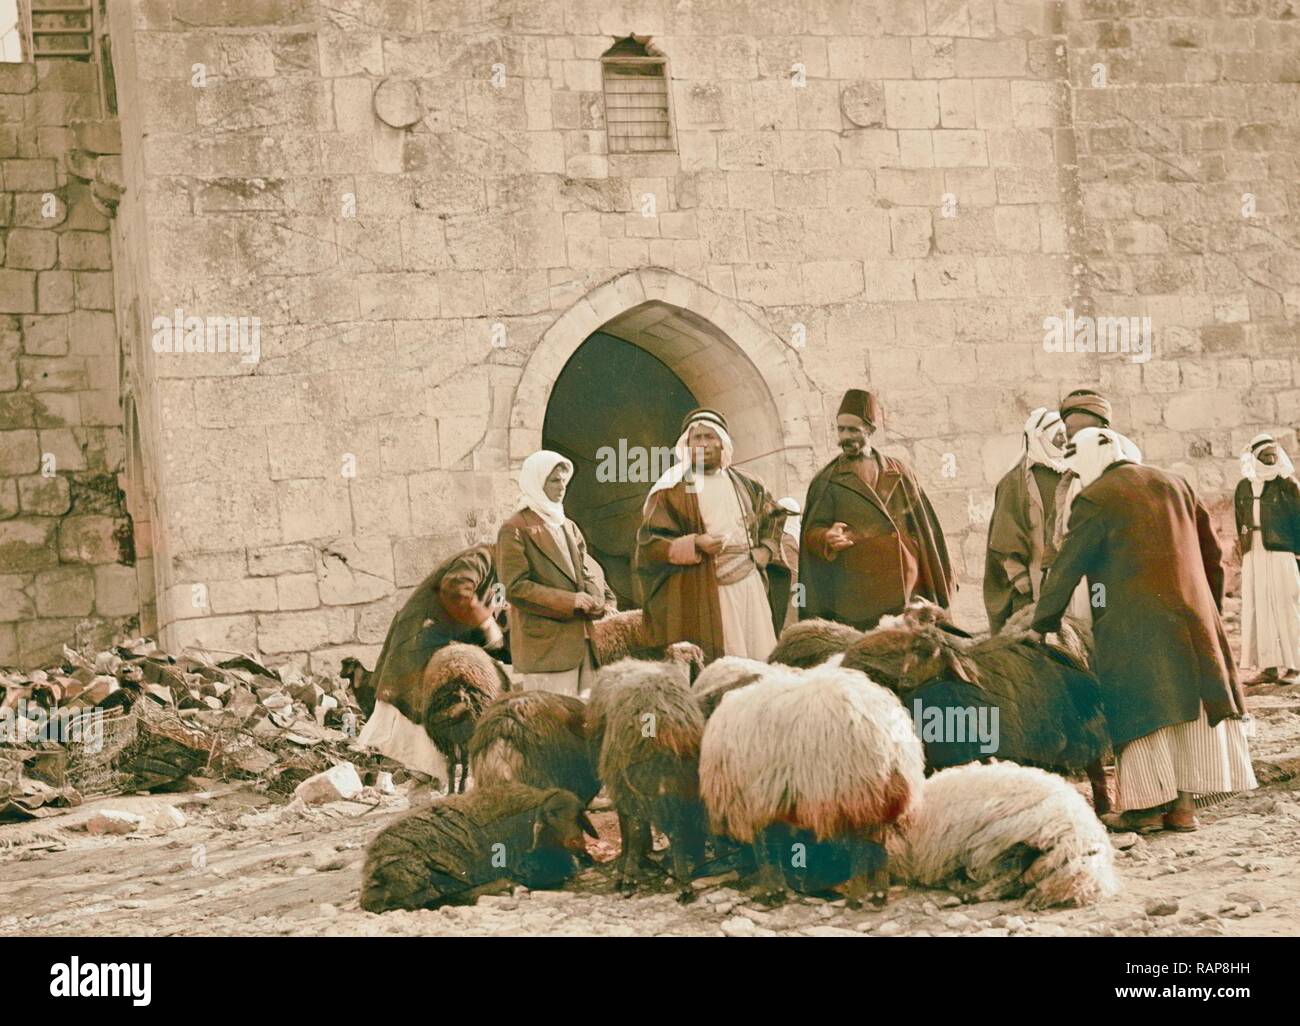 Mercado de ovejas en la Puerta de Herodes. En 1934, Jerusalén, Israel.  Reimagined by Gibon. Arte clásico con un toque moderno reinventado  Fotografía de stock - Alamy